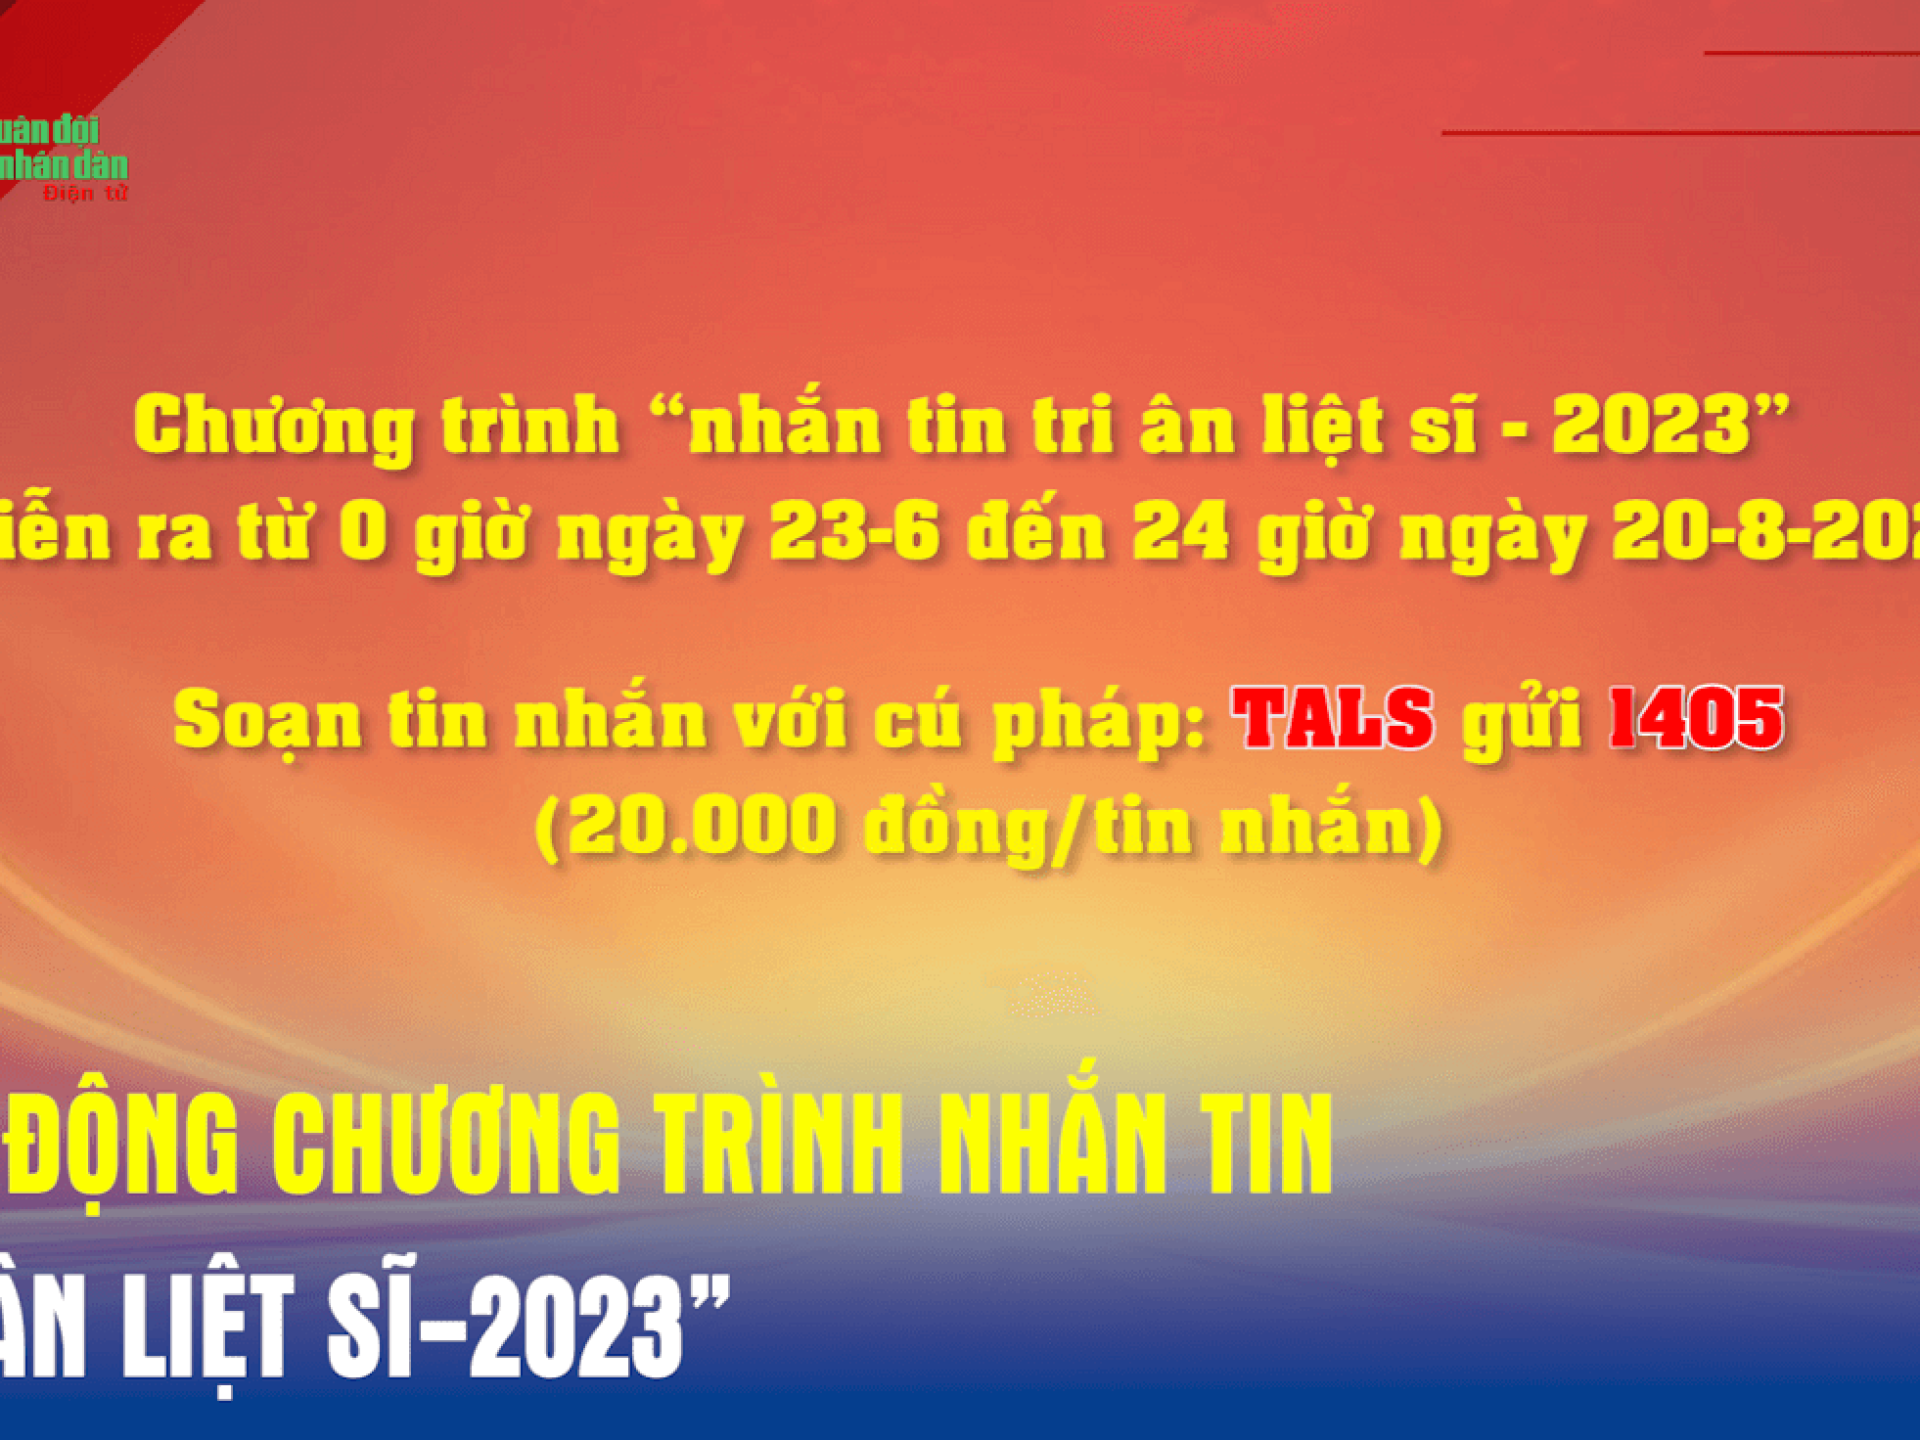 HƯỞNG ỨNG CHƯƠNG TRÌNH NHẮN TIN "TRI ÂN LIỆT SĨ - 2023"